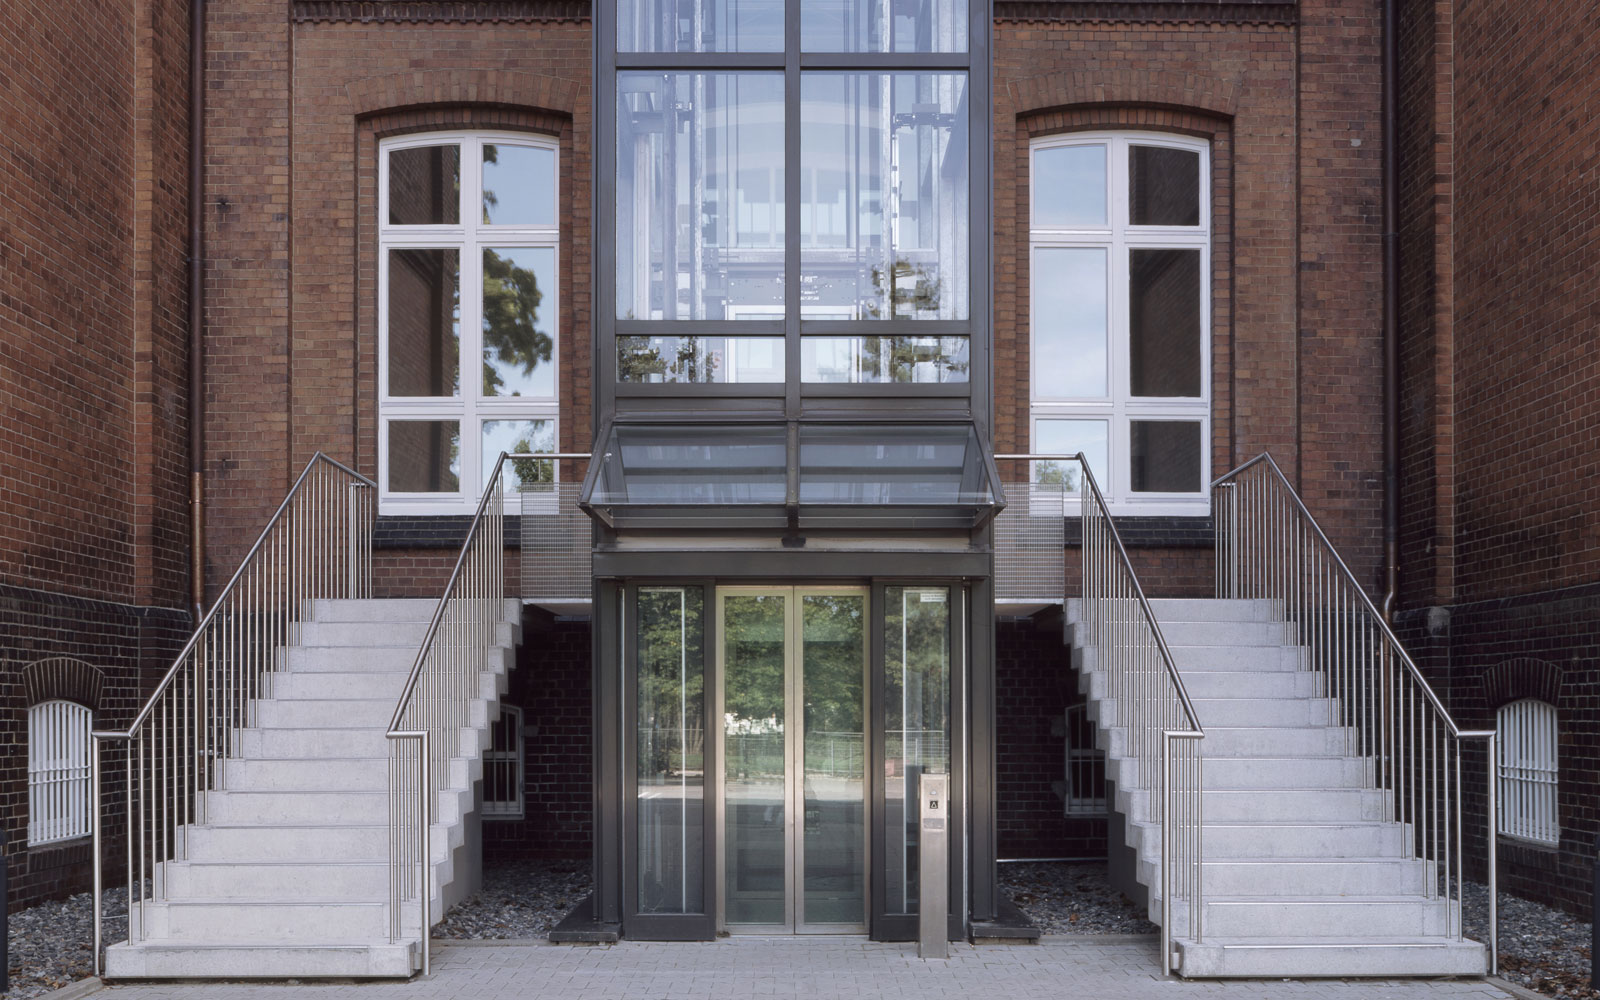 Studieninstitut Bielefeld - Eingangsbereich